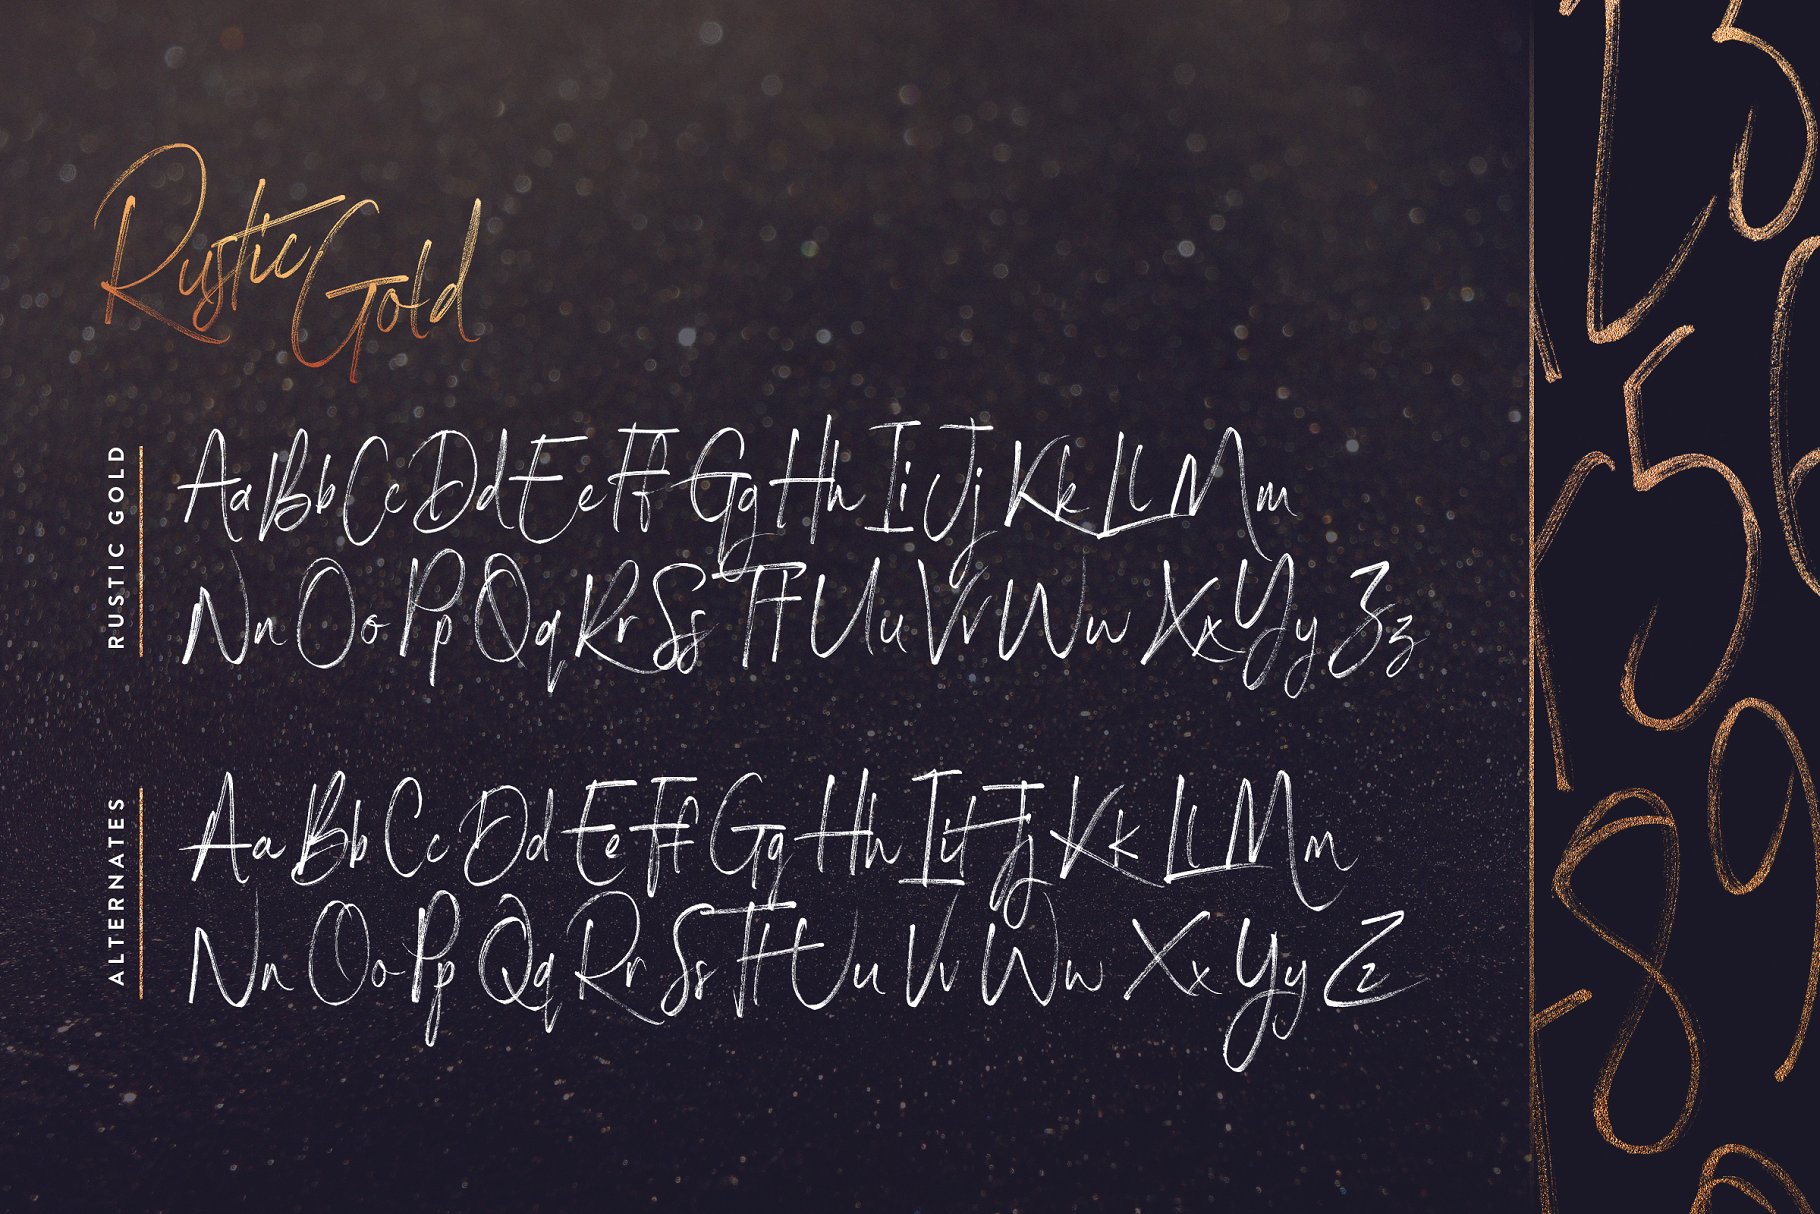 龙飞凤舞飘逸手写英文字体 Rustic Gold SVG Brush Script插图(8)